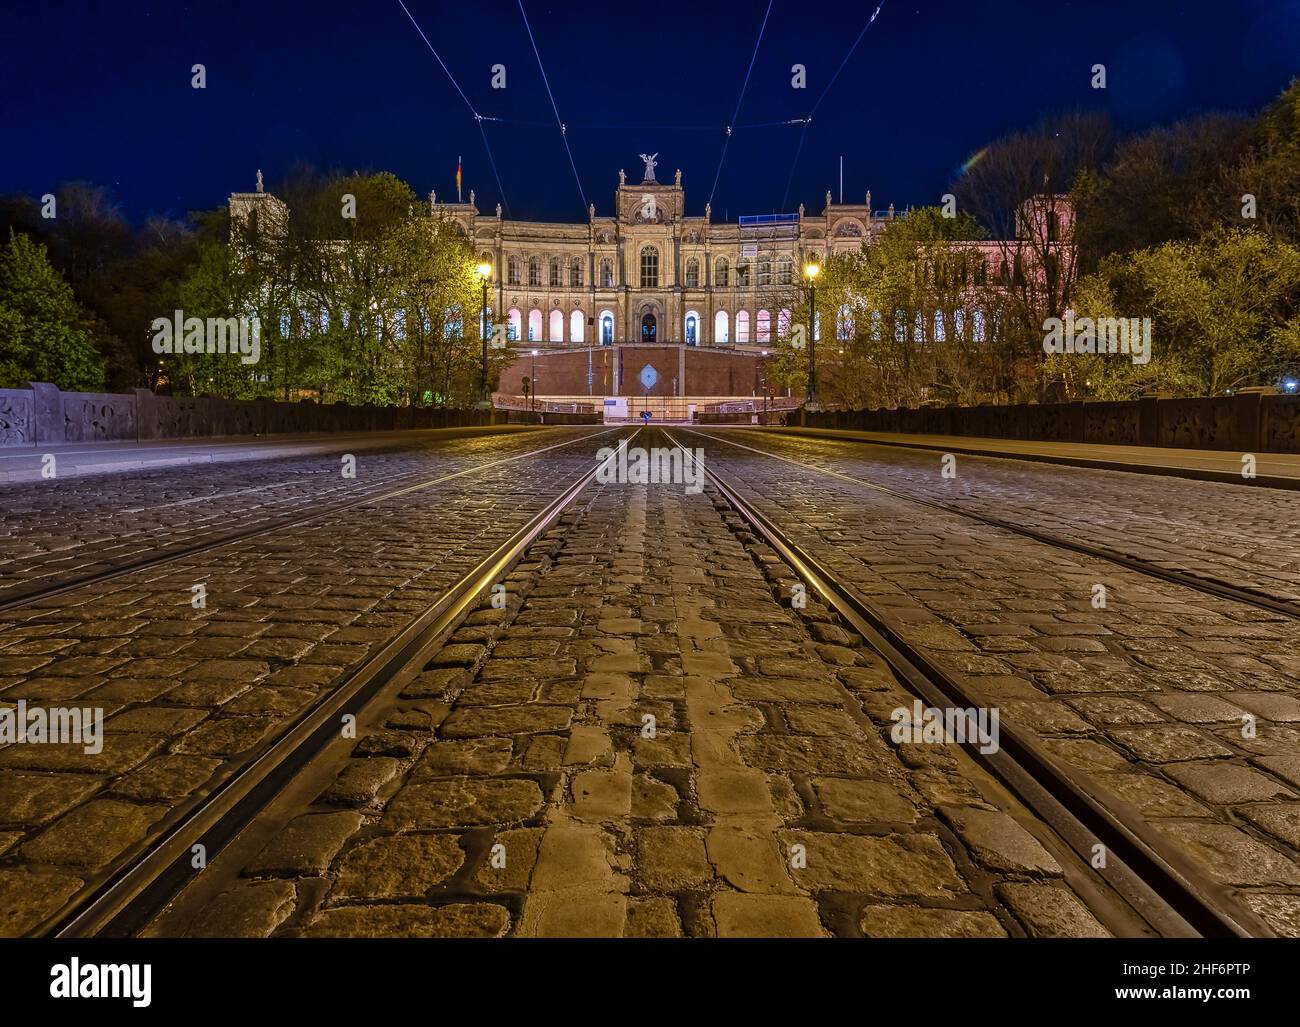 Vue symétrique à faible perspective sur une piste de tramway avec l'architecture populaire de Munich en arrière-plan la nuit Banque D'Images